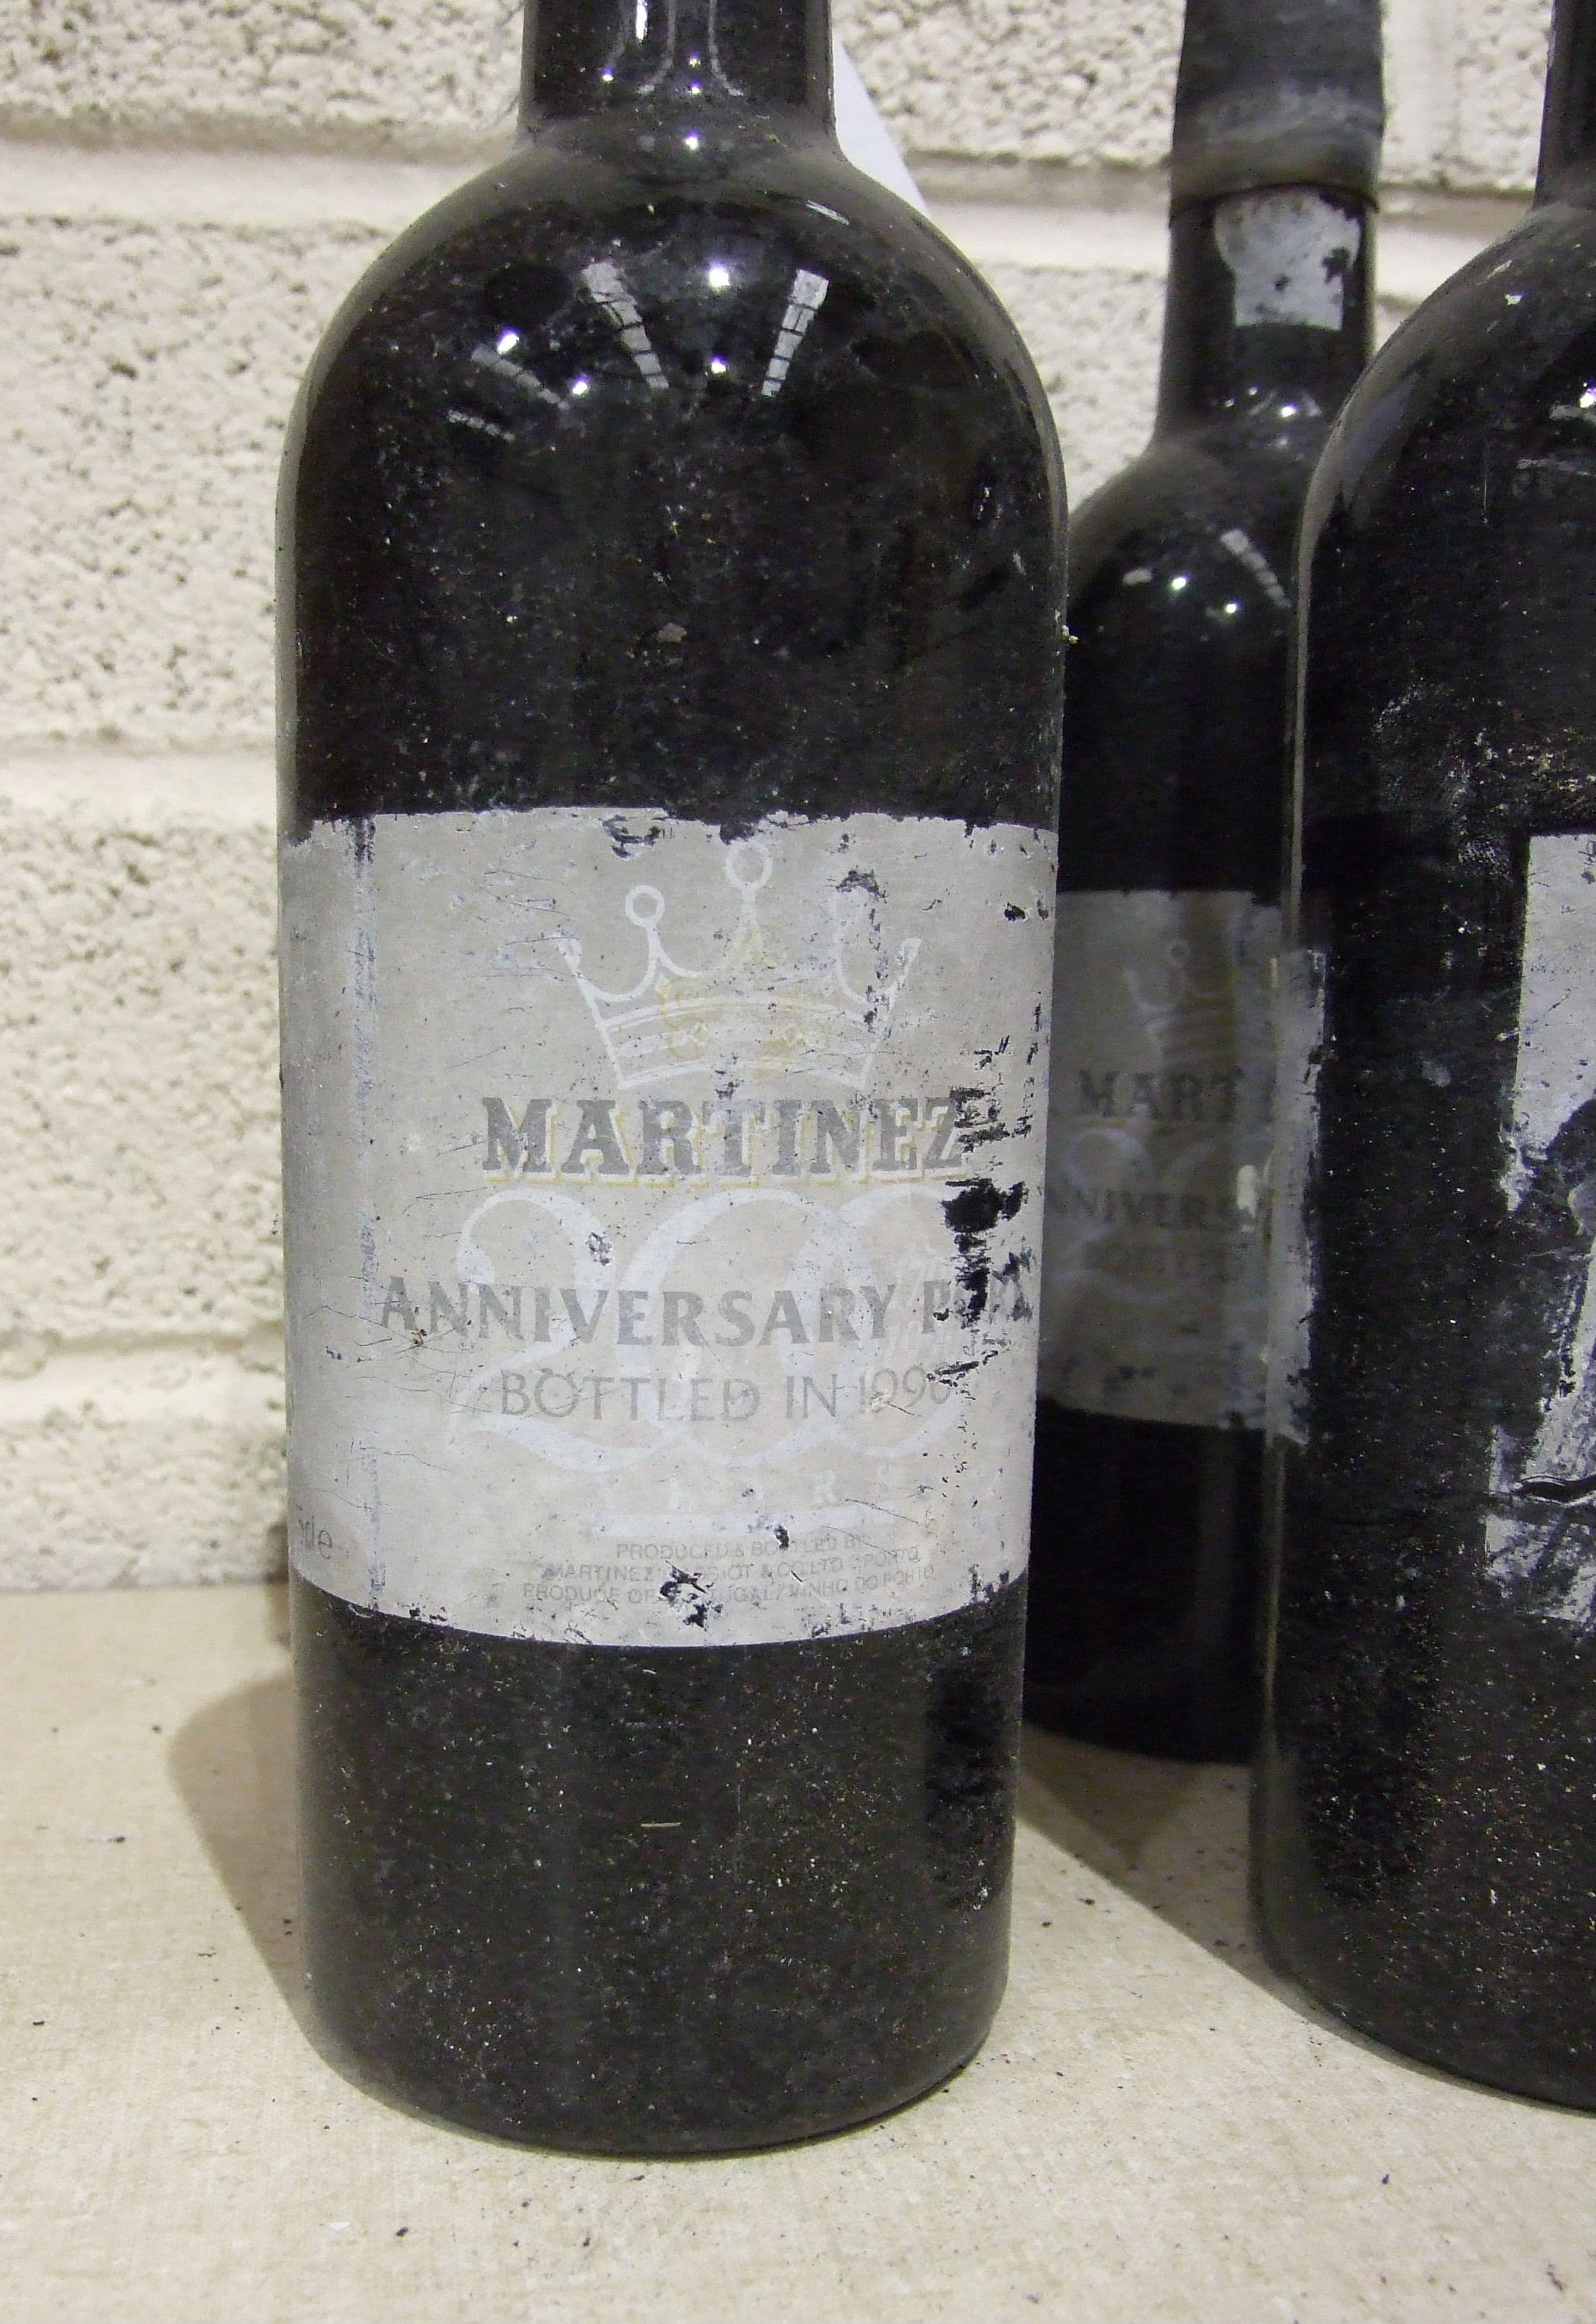 Martinez 1990 Vintage Port, 6 bottles. - Image 2 of 2